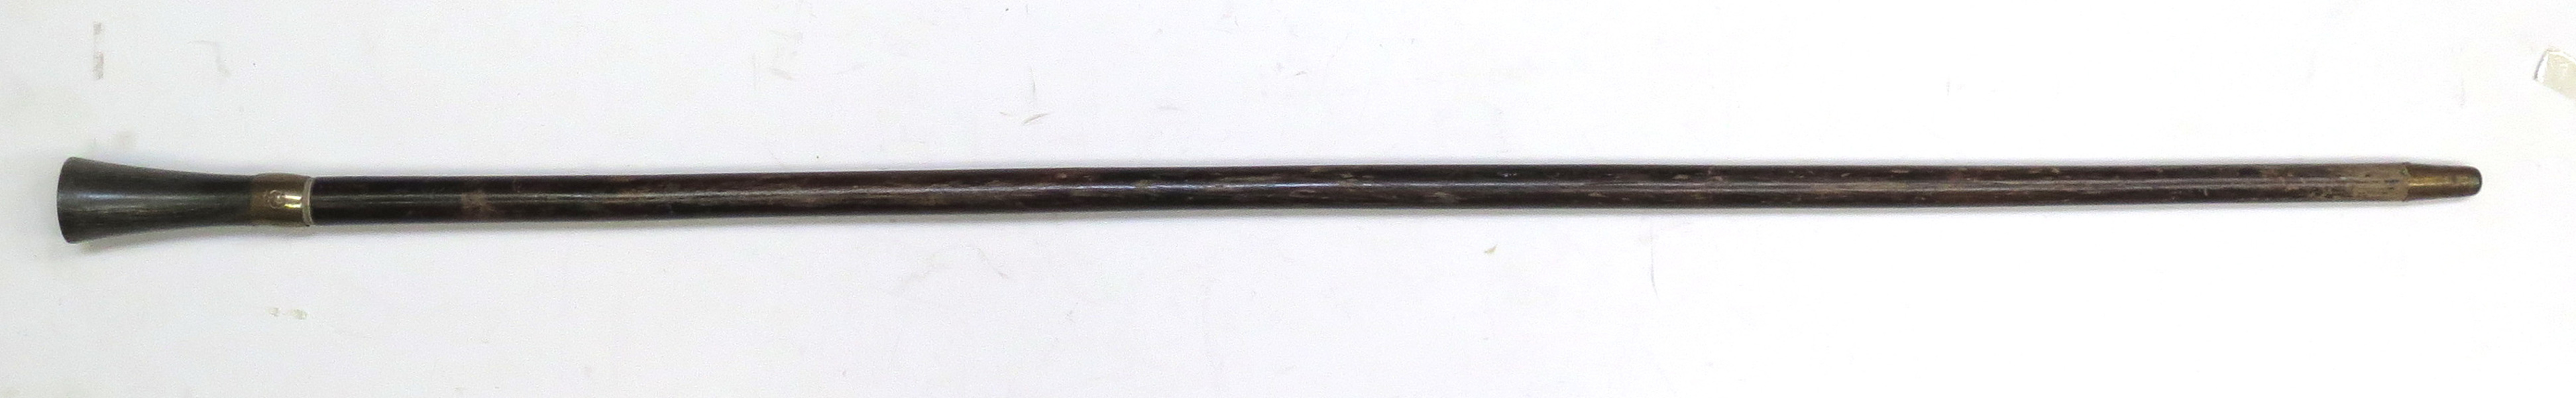 Spatserkäpp med vapensköld, 1800-tal, trä och horn med mässingsbeslag, _8139a_lg.jpeg